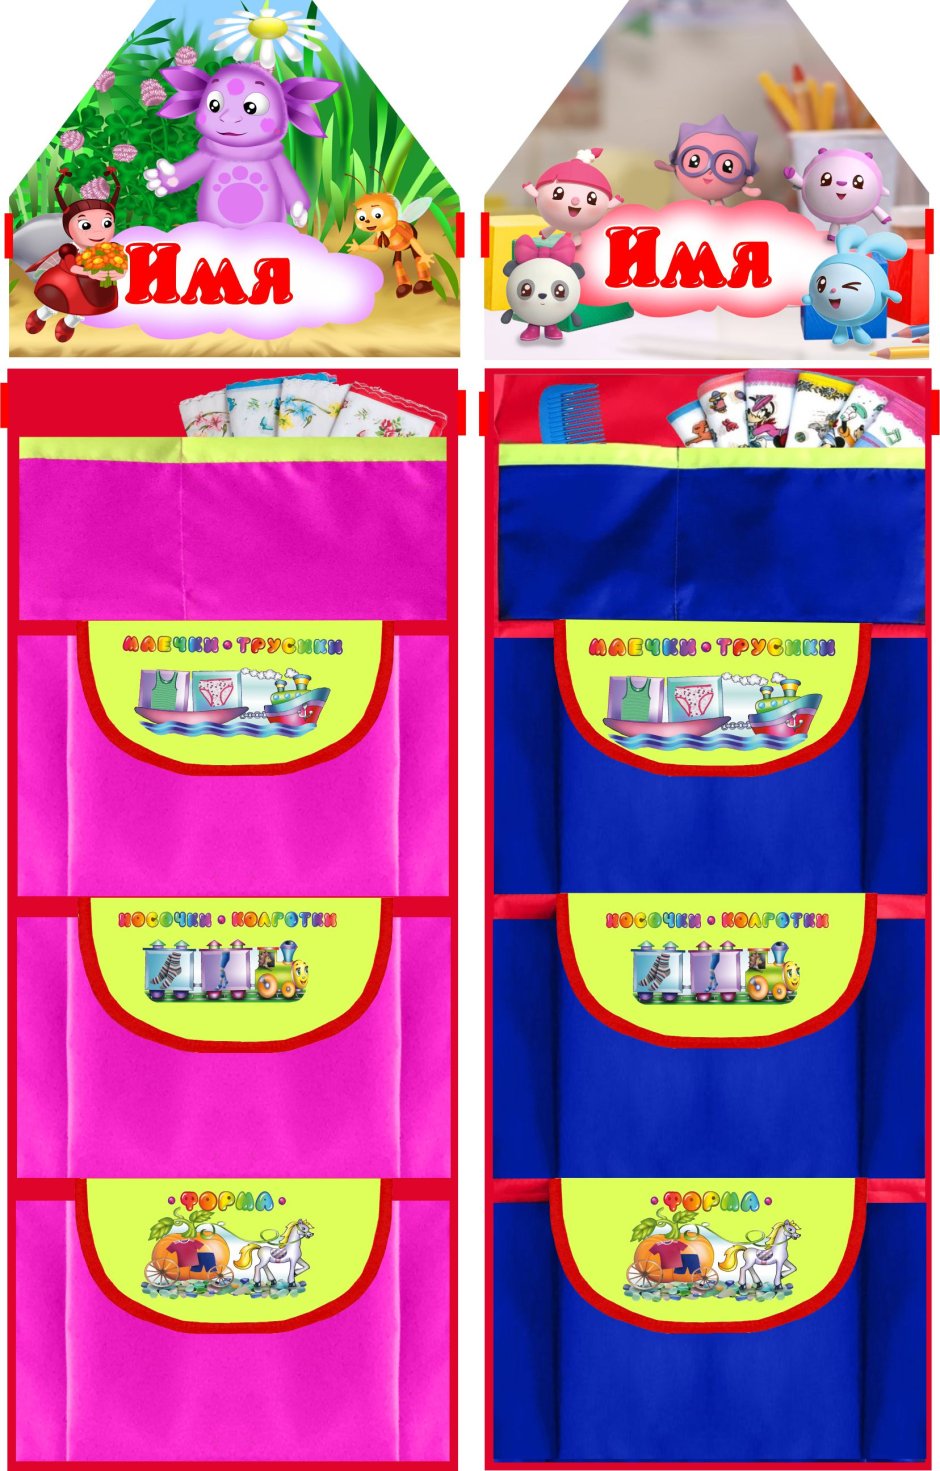 Кармашки для шкафчика в детском саду с именами